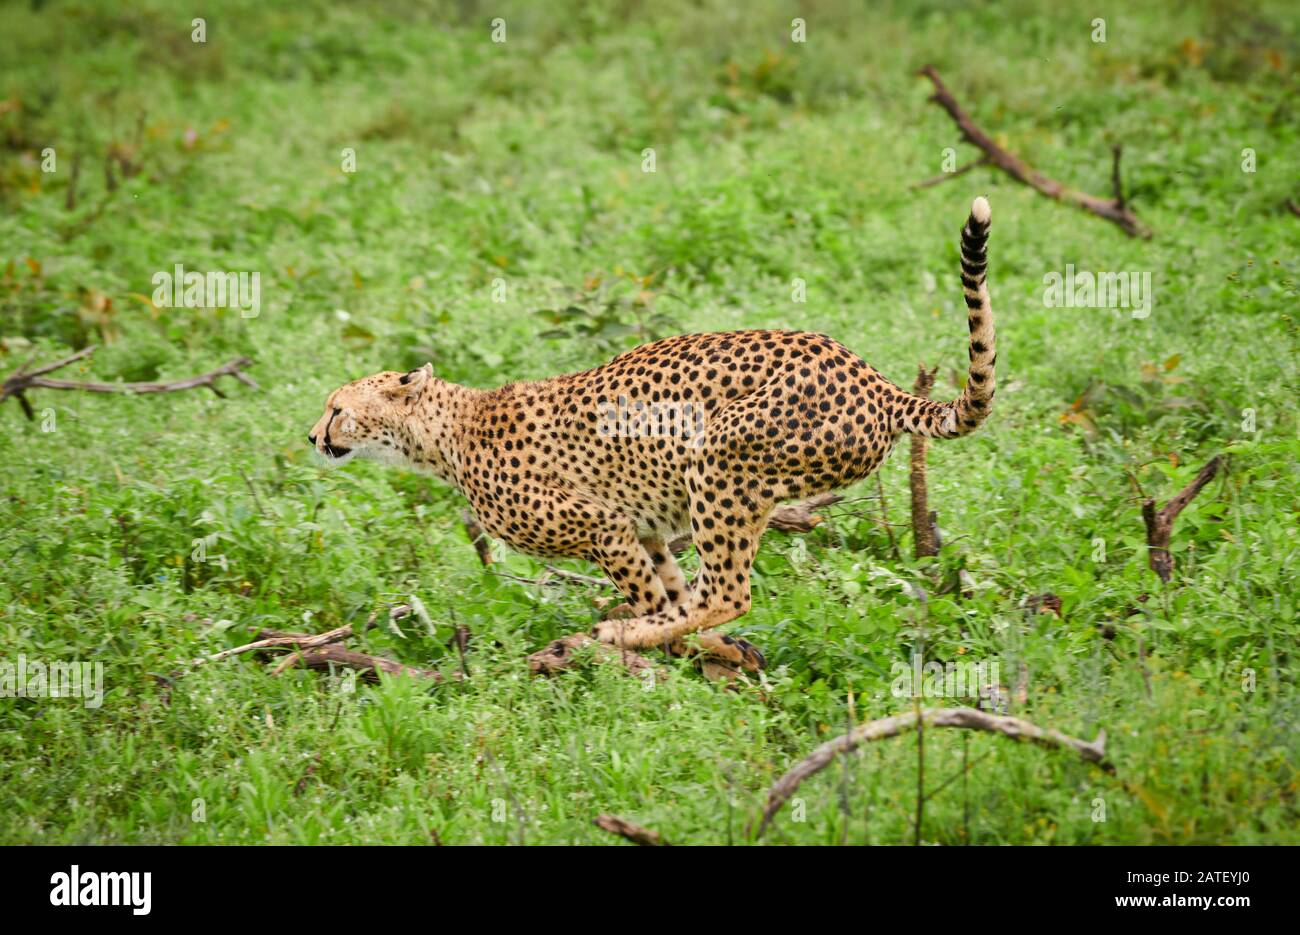 running cheetah, Acinonyx jubatus, in Serengeti National Park, Acinonyx jubatus, UNESCO world heritage site, Tanzania, Africa Stock Photo